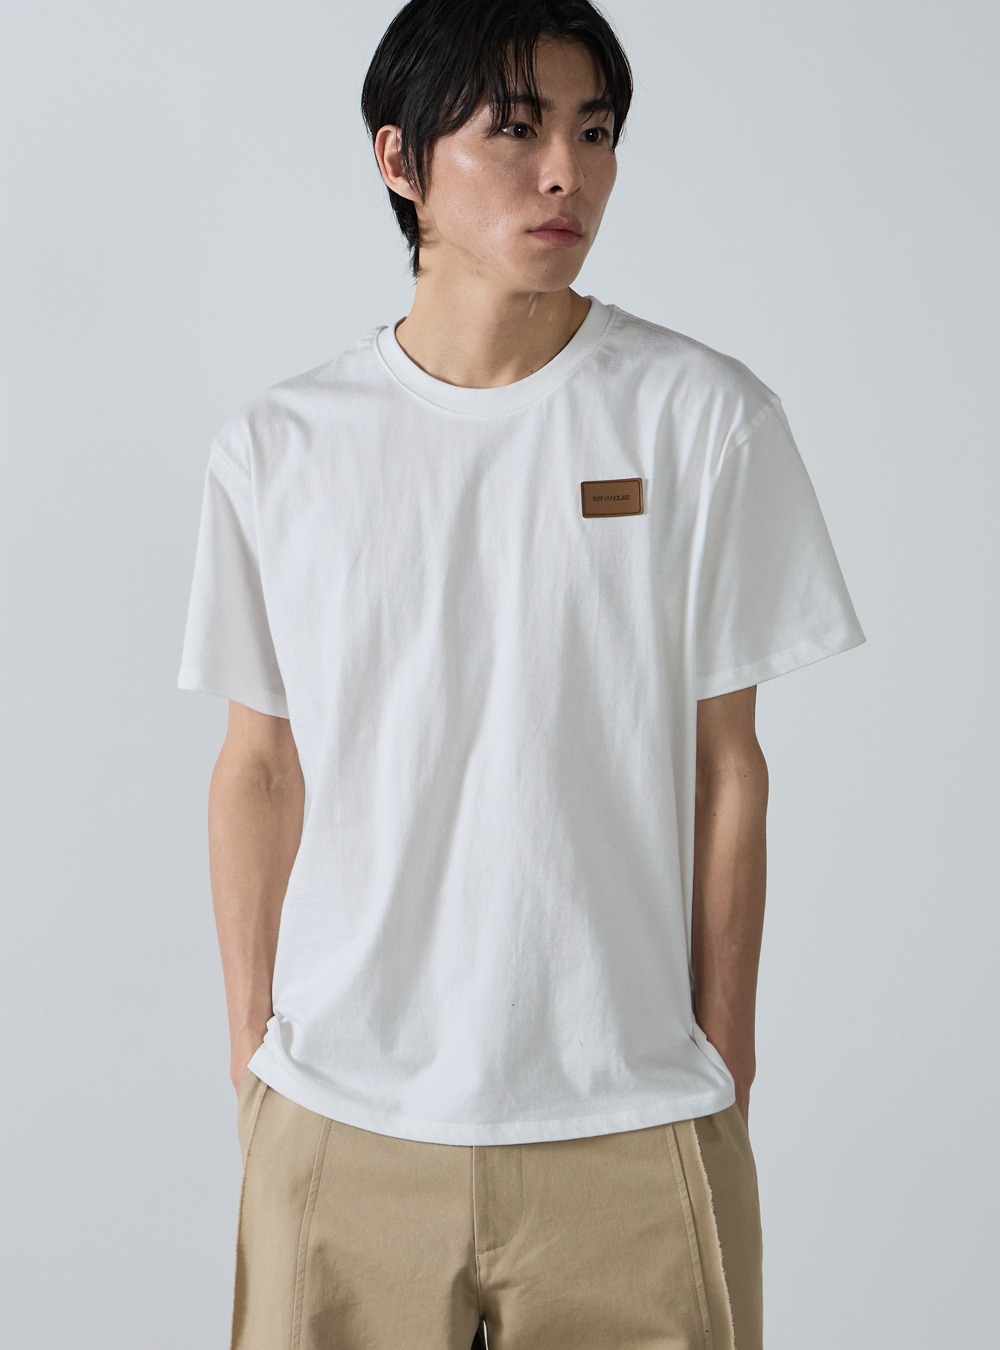 에센셜 레더 라벨 티셔츠 화이트Essential leather label T-shirt white